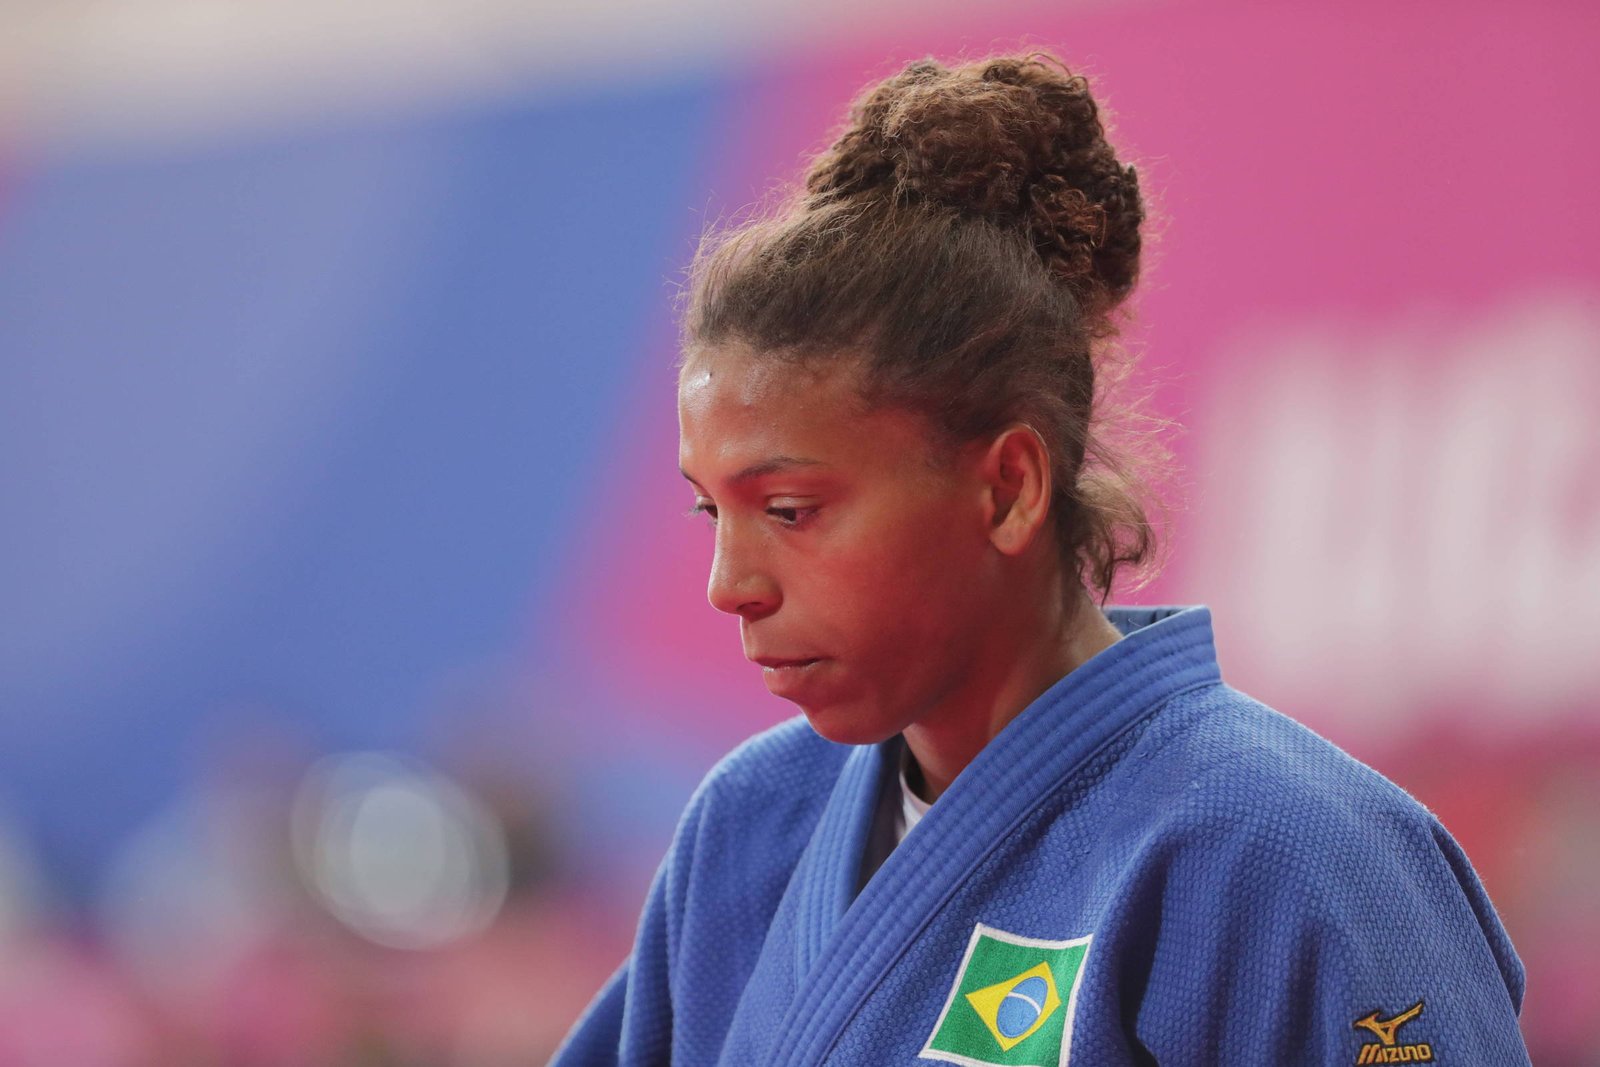 Campeã olímpica, judoca Rafaela Silva é suspensa por dois anos por doping